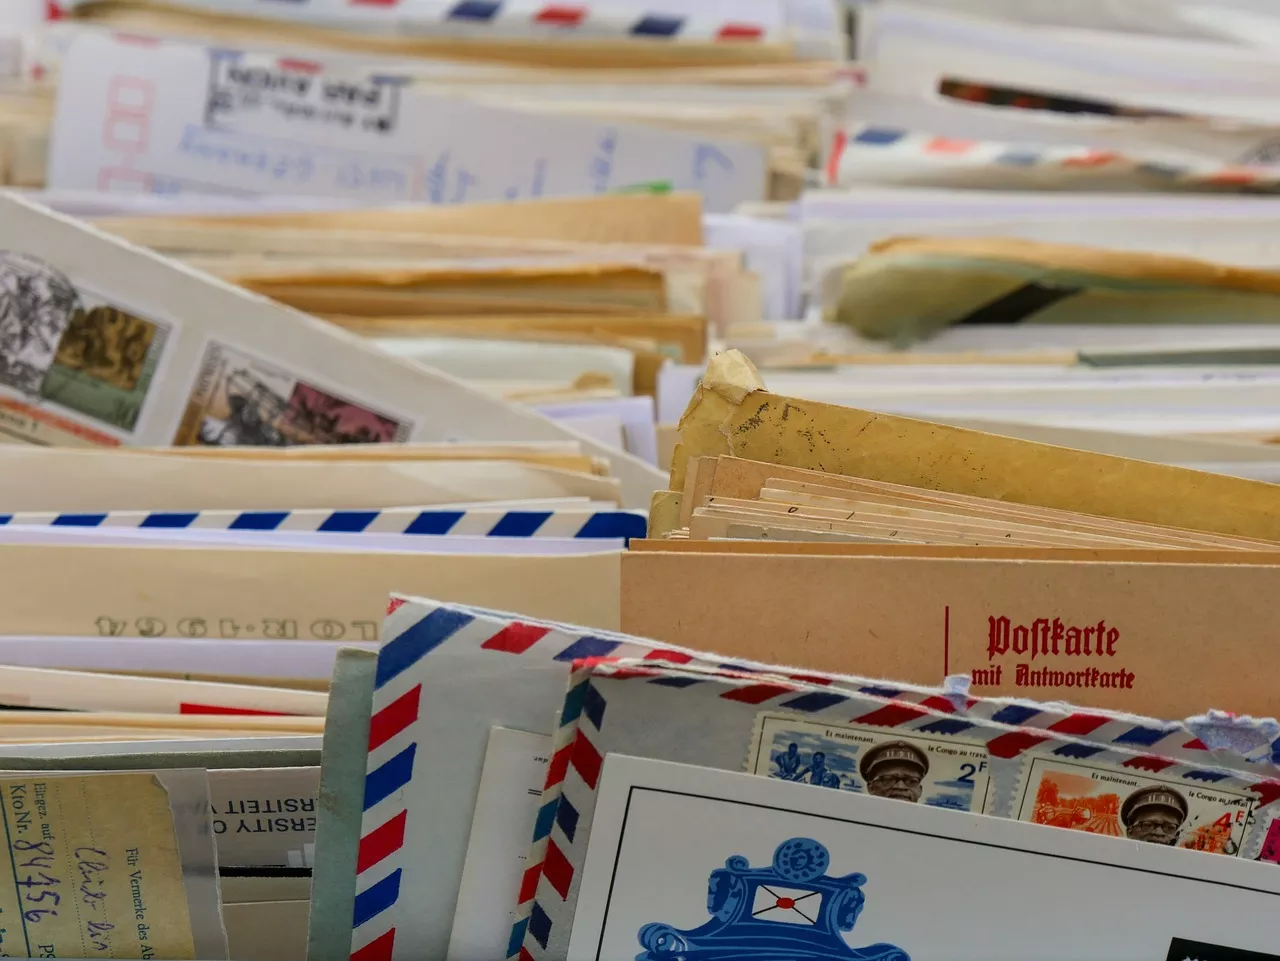 Почтальон из Квинса вскрывала чужую корреспонденцию и потратила $8 тысяч чужой кредитной картой